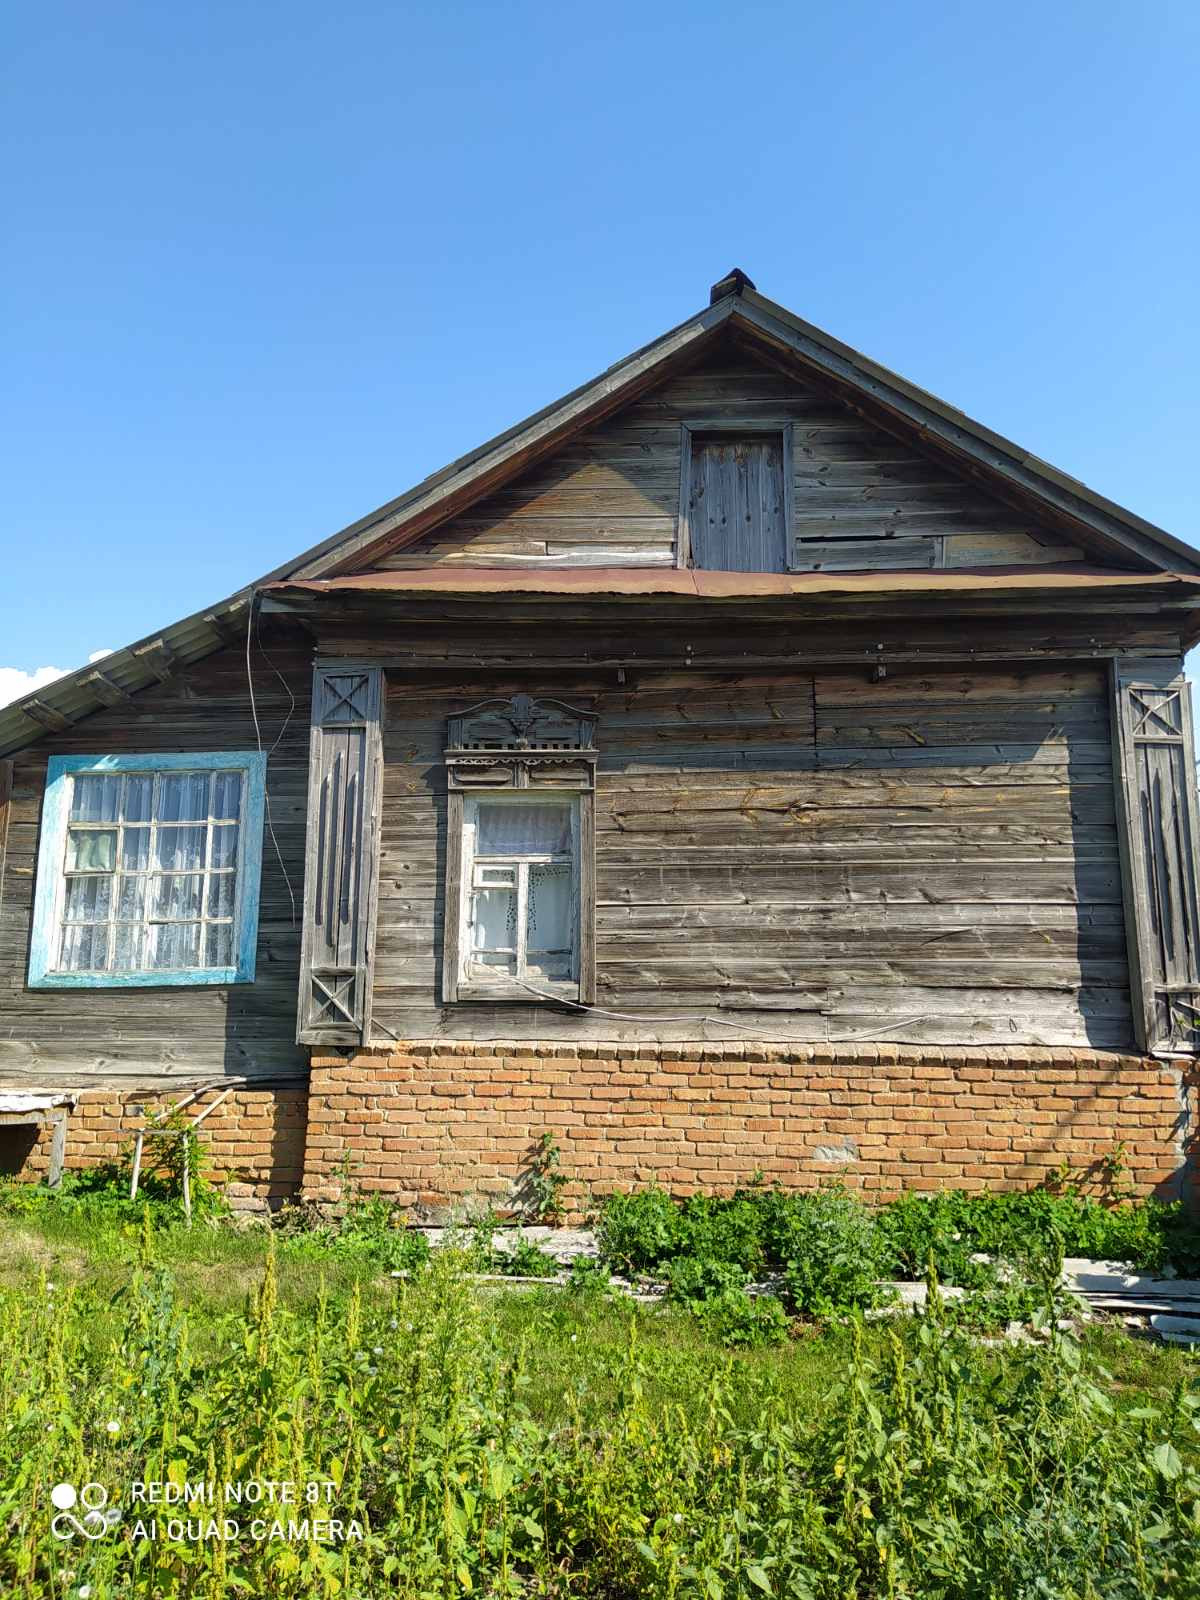 Базарно карабулакский район саратовской области дома